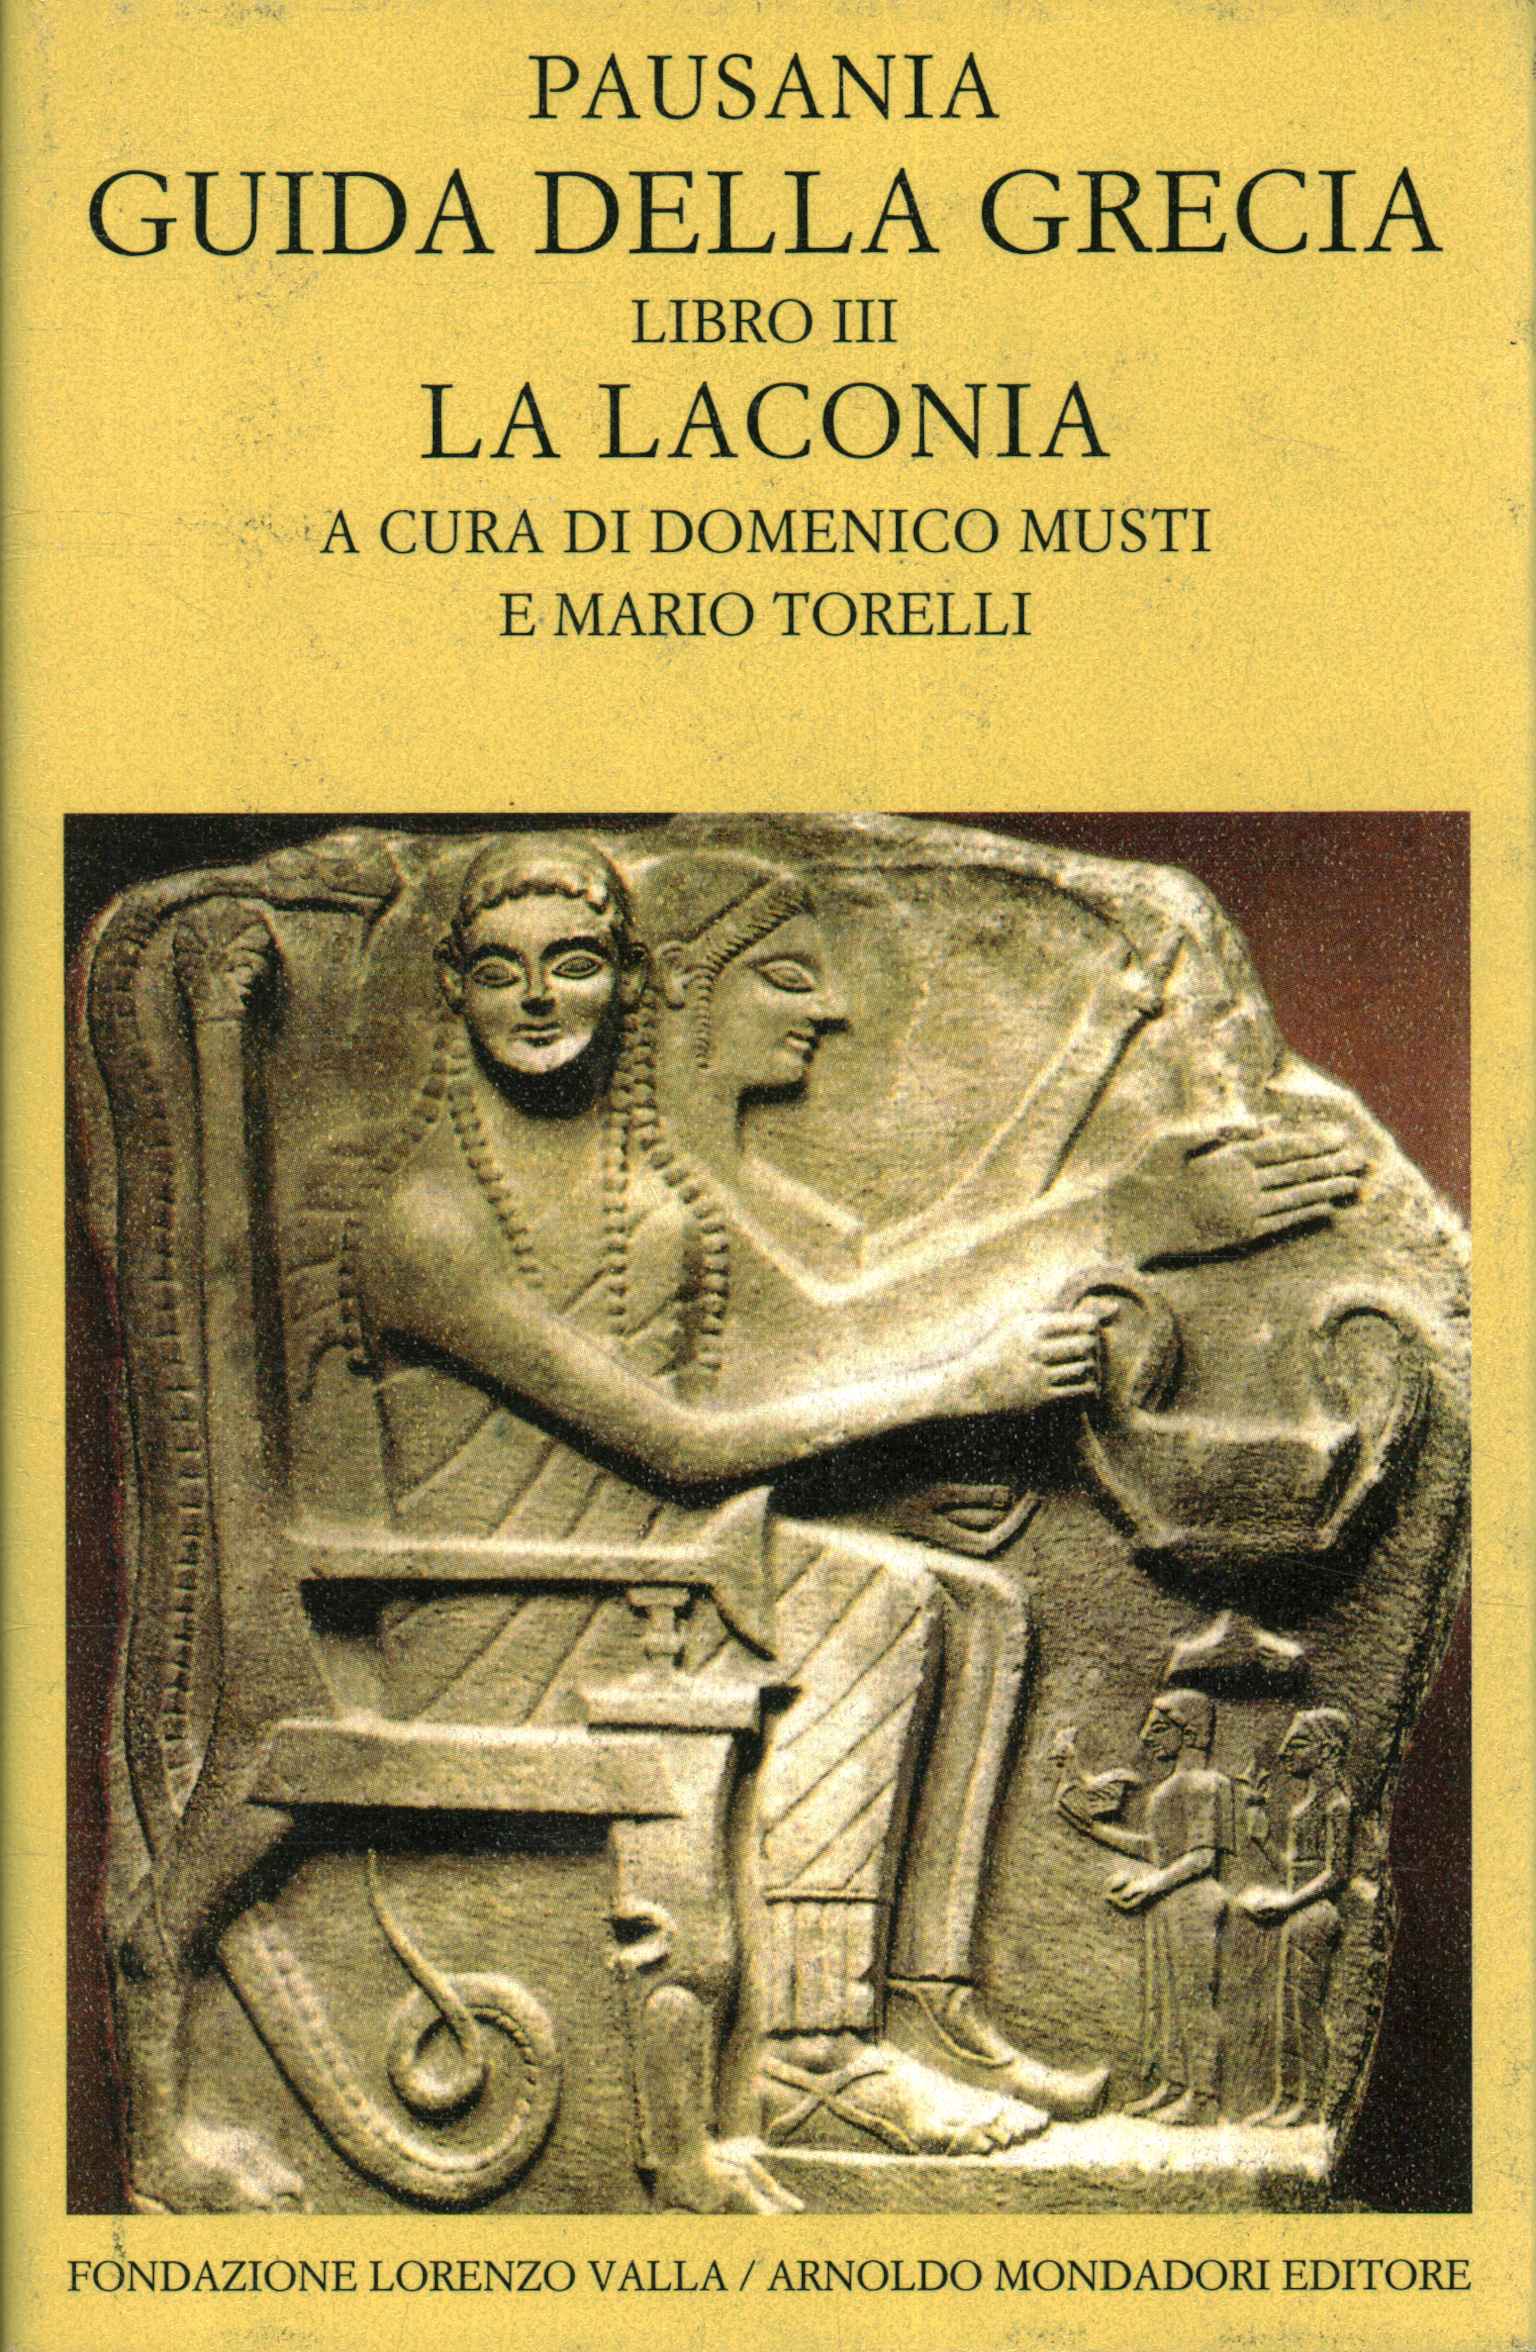 Guida della Grecia libro III. La Lacon,Guida della Grecia (Volume 3). La Laco